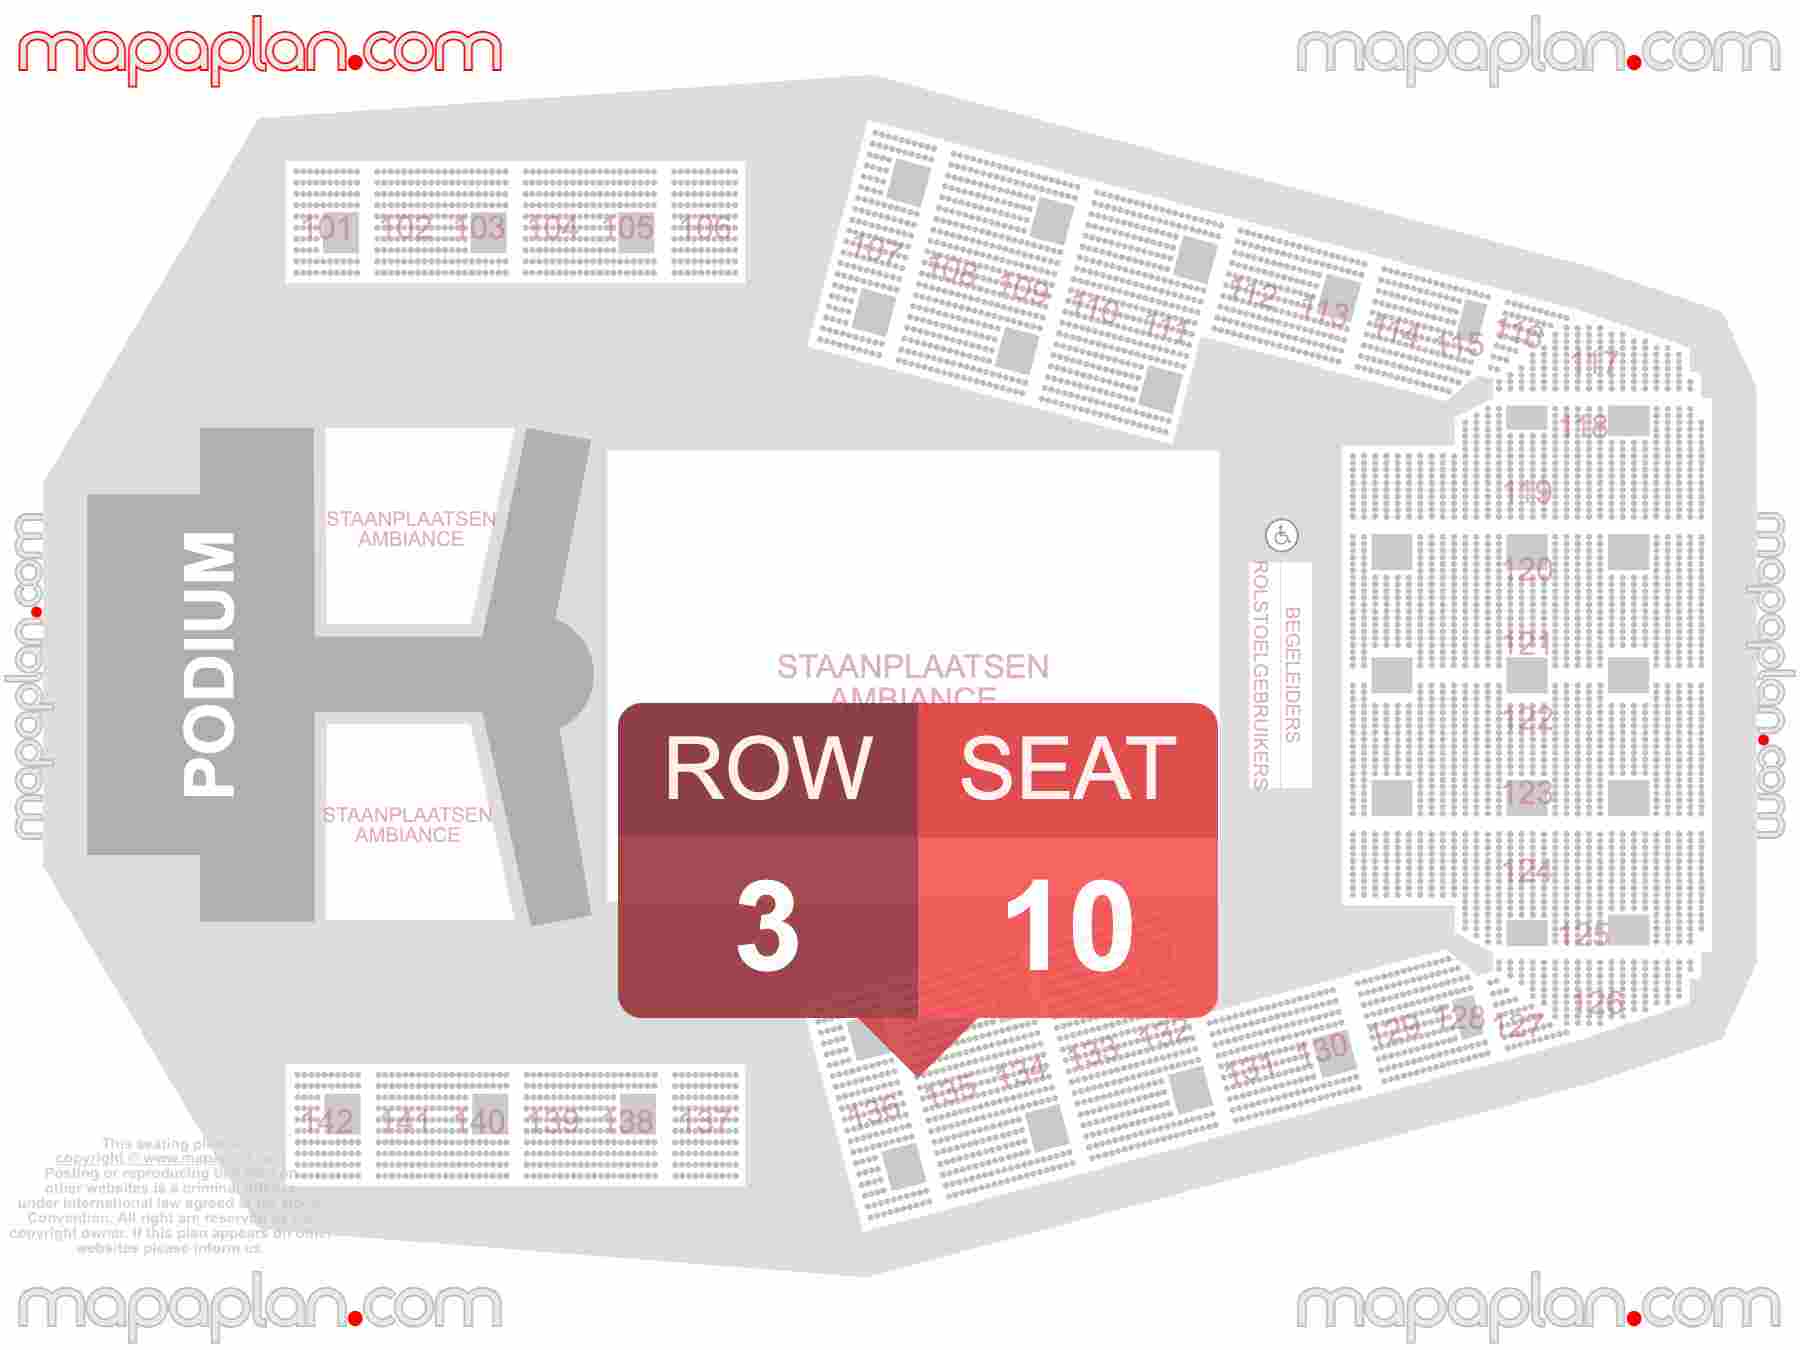 Hasselt Trixxo Arena seating plan Concerts plaatsen rijen blokken stoelnummers nummering - Verdeling staanplaatsen zaalplan indeling - inside capacity view arrangement map - Interactive virtual 3d best seats & rows detailed stadium image configuration layout